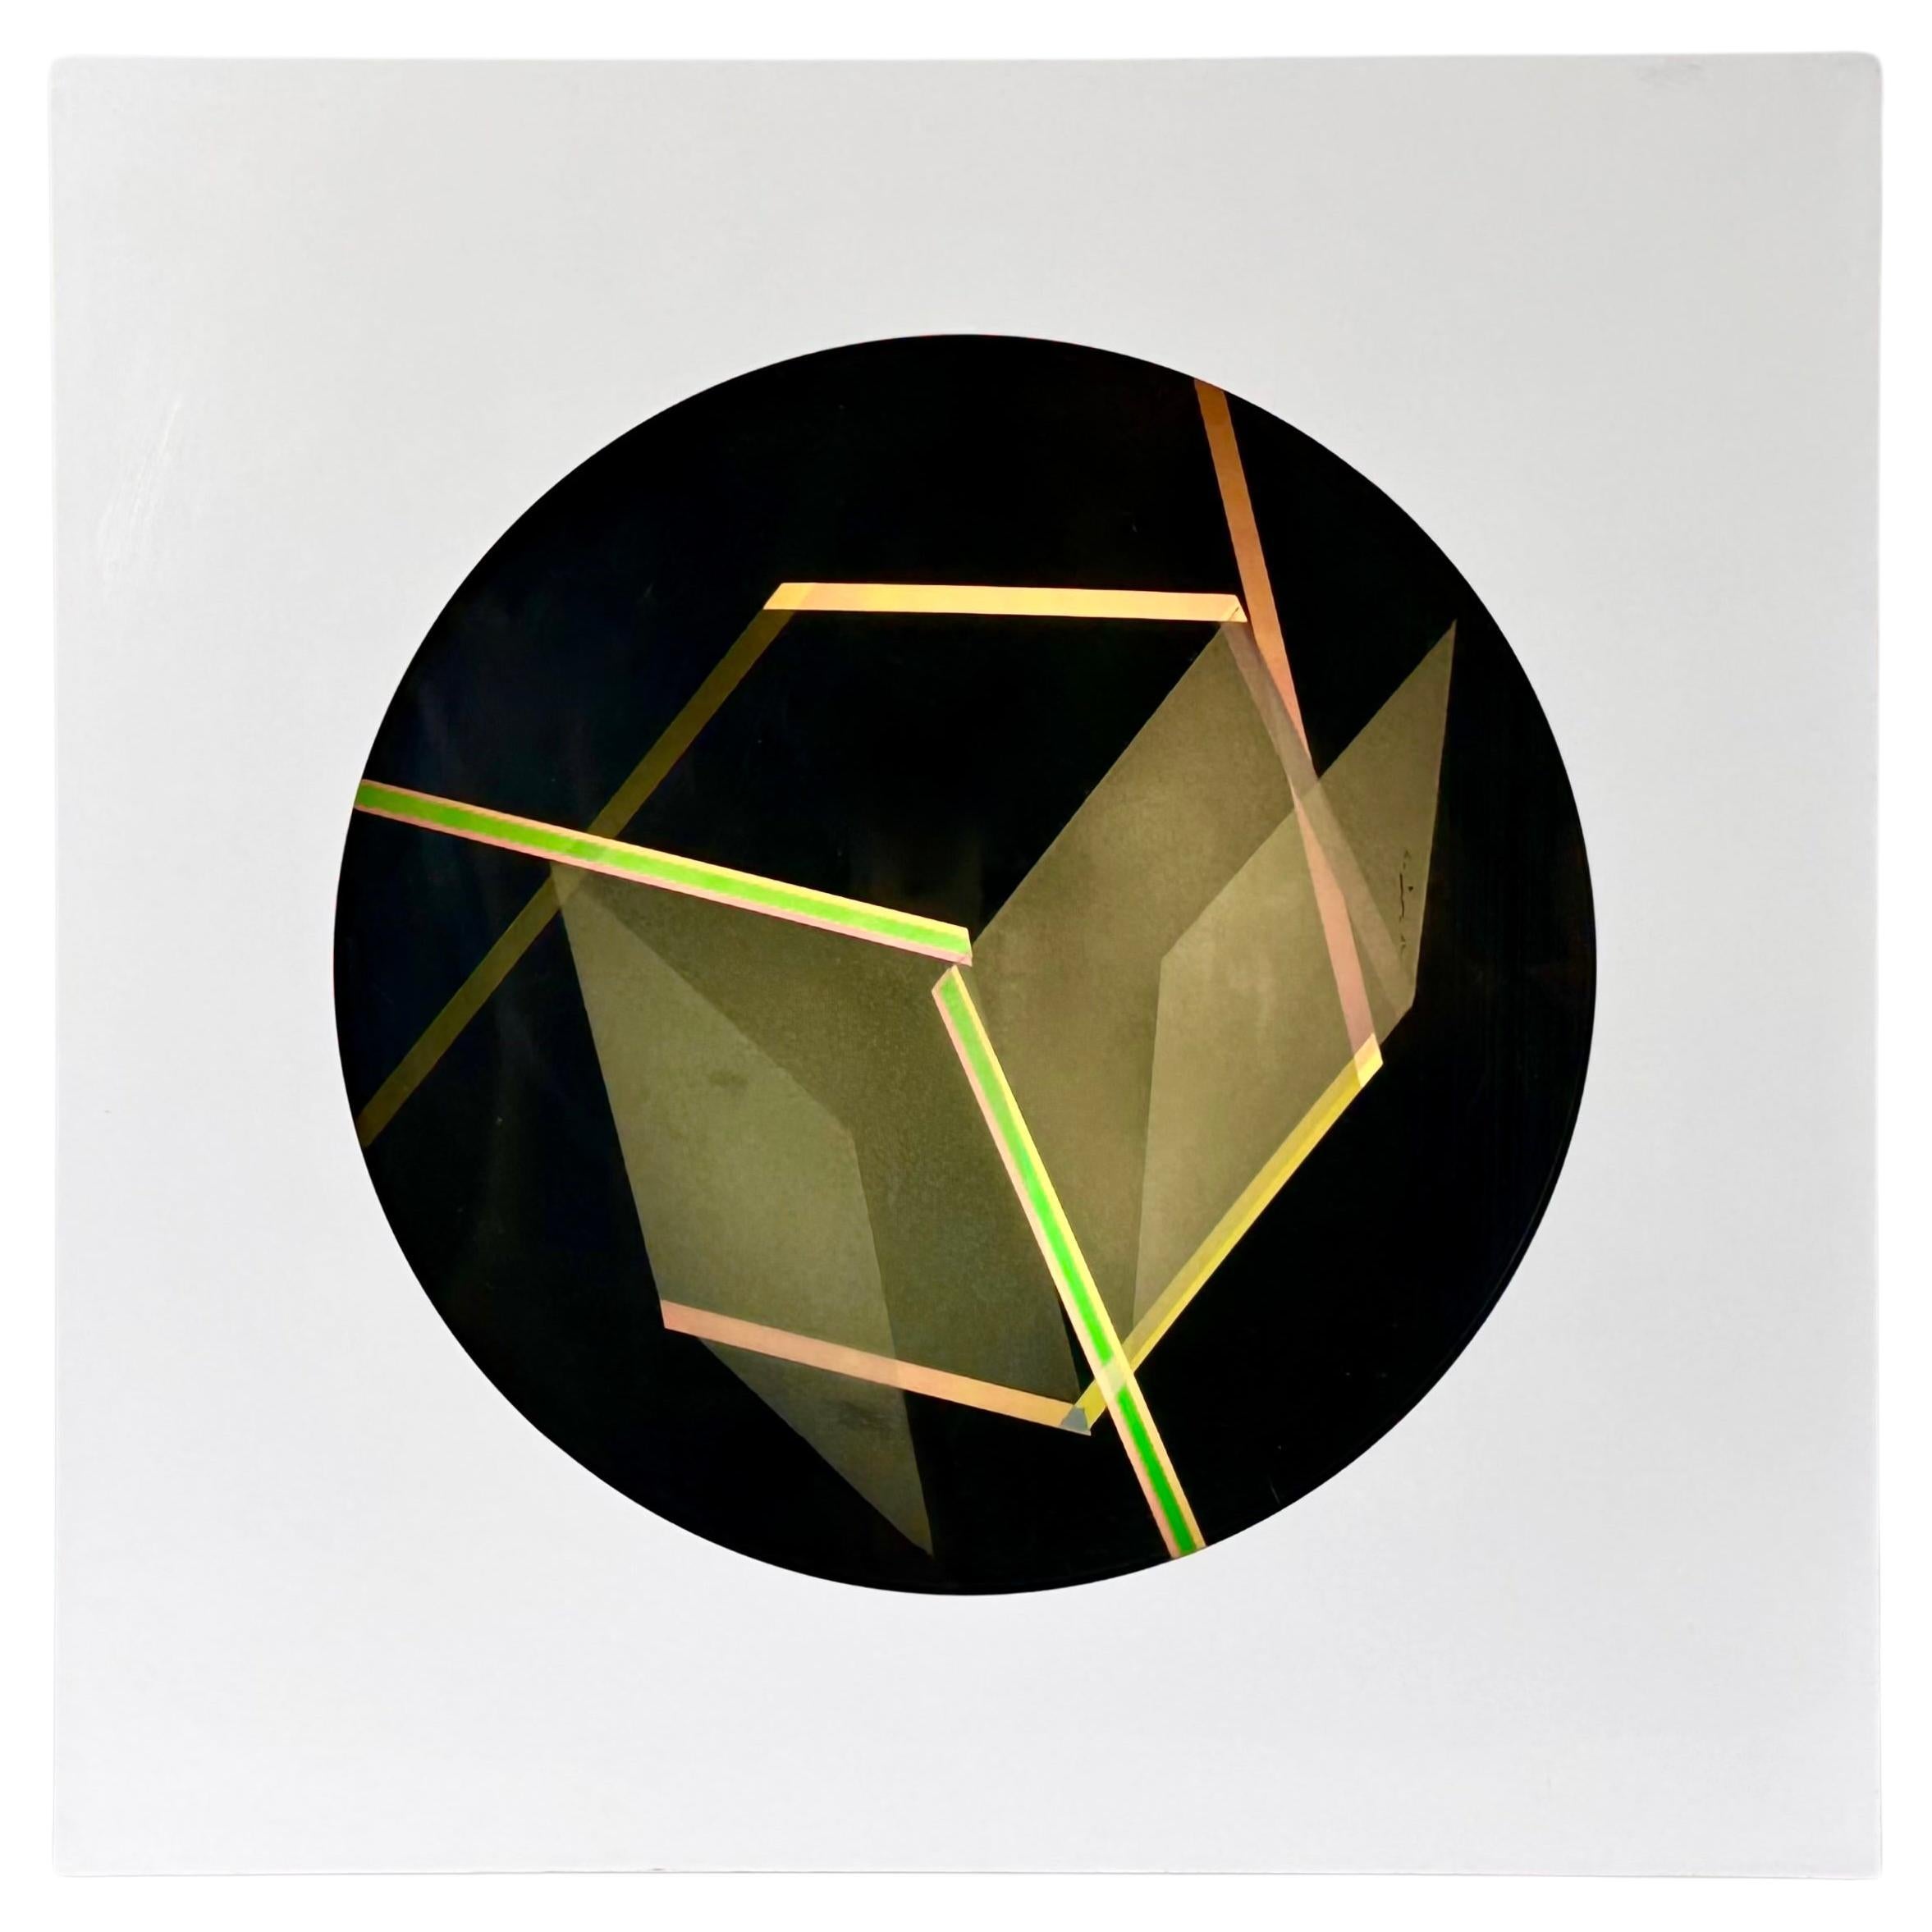 Helen Gilbert Contemporary Modern Op Art Kinetic Light Box Sculpture 1984 For Sale